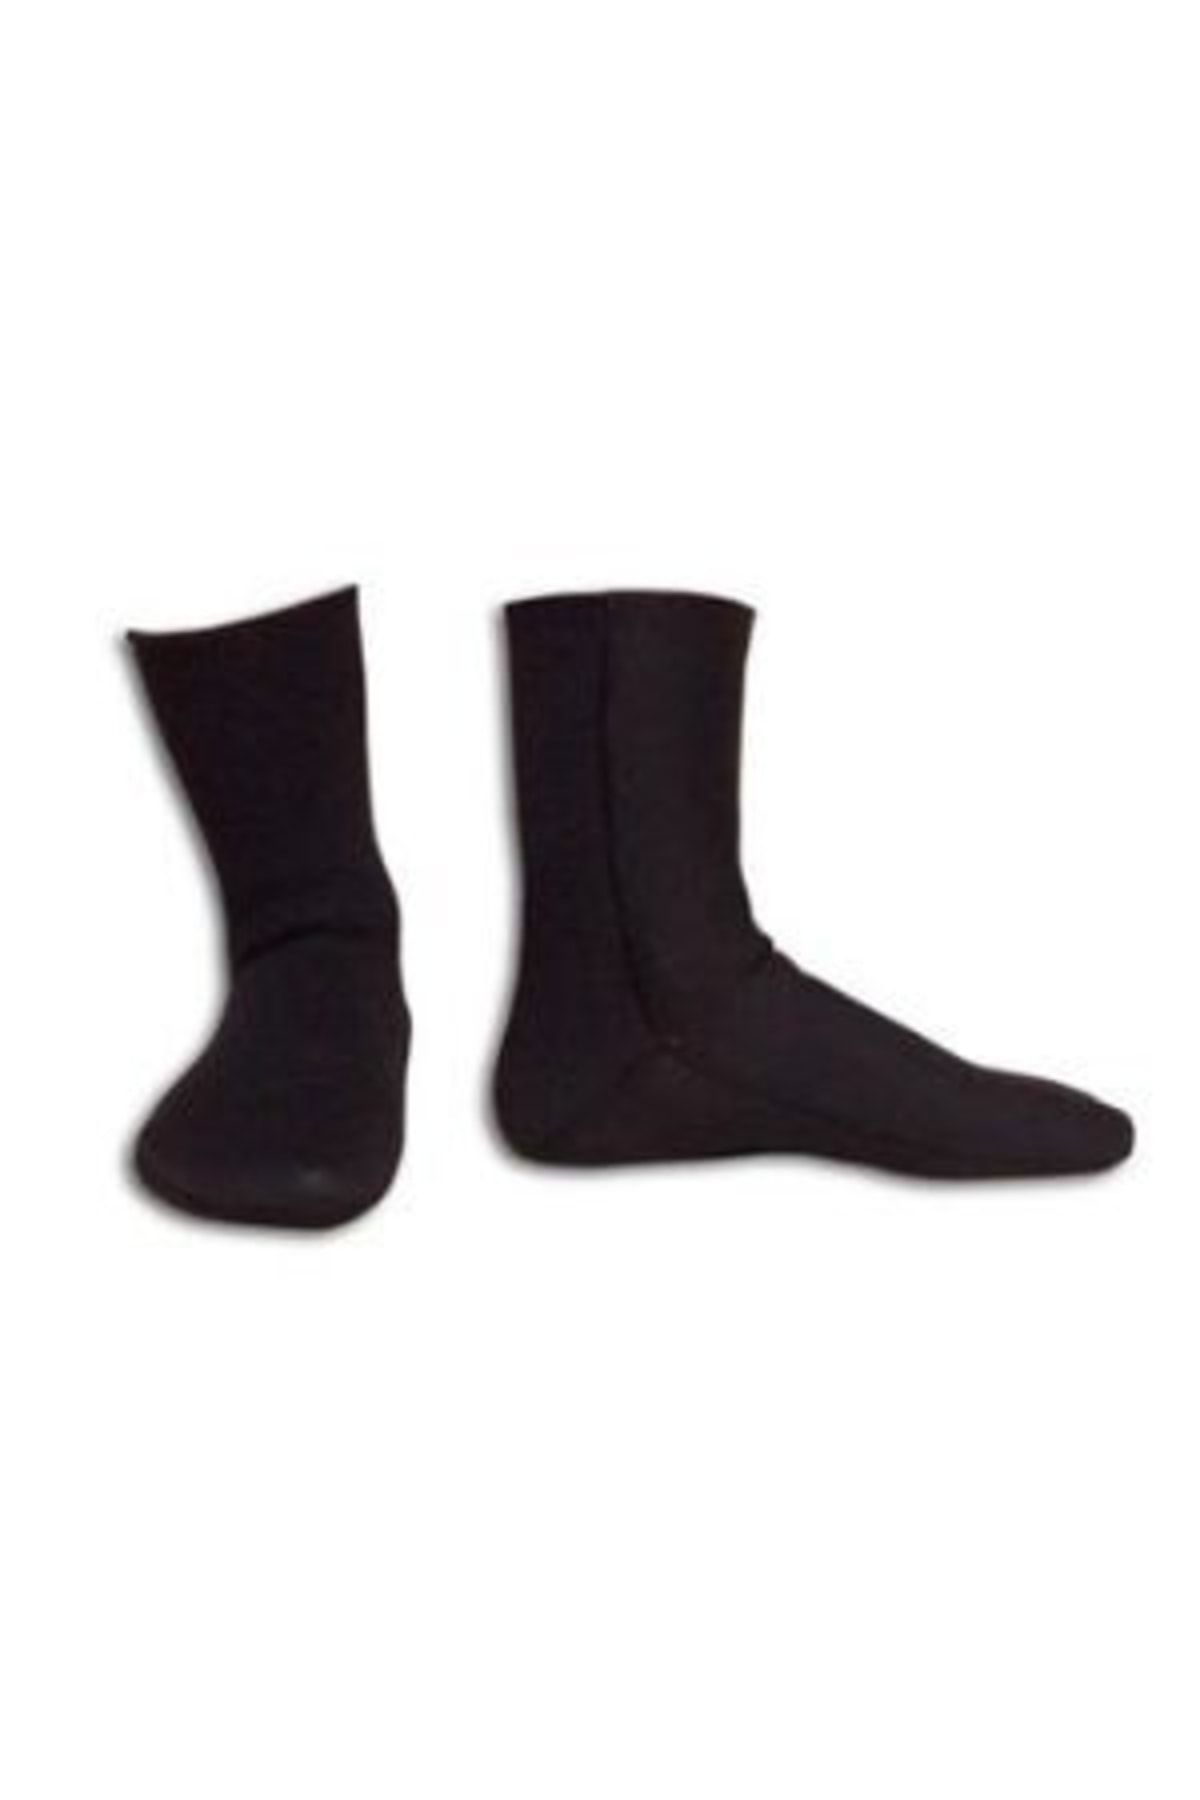 Apnea 5mm Çorap Siyah Beden: 2xlarge